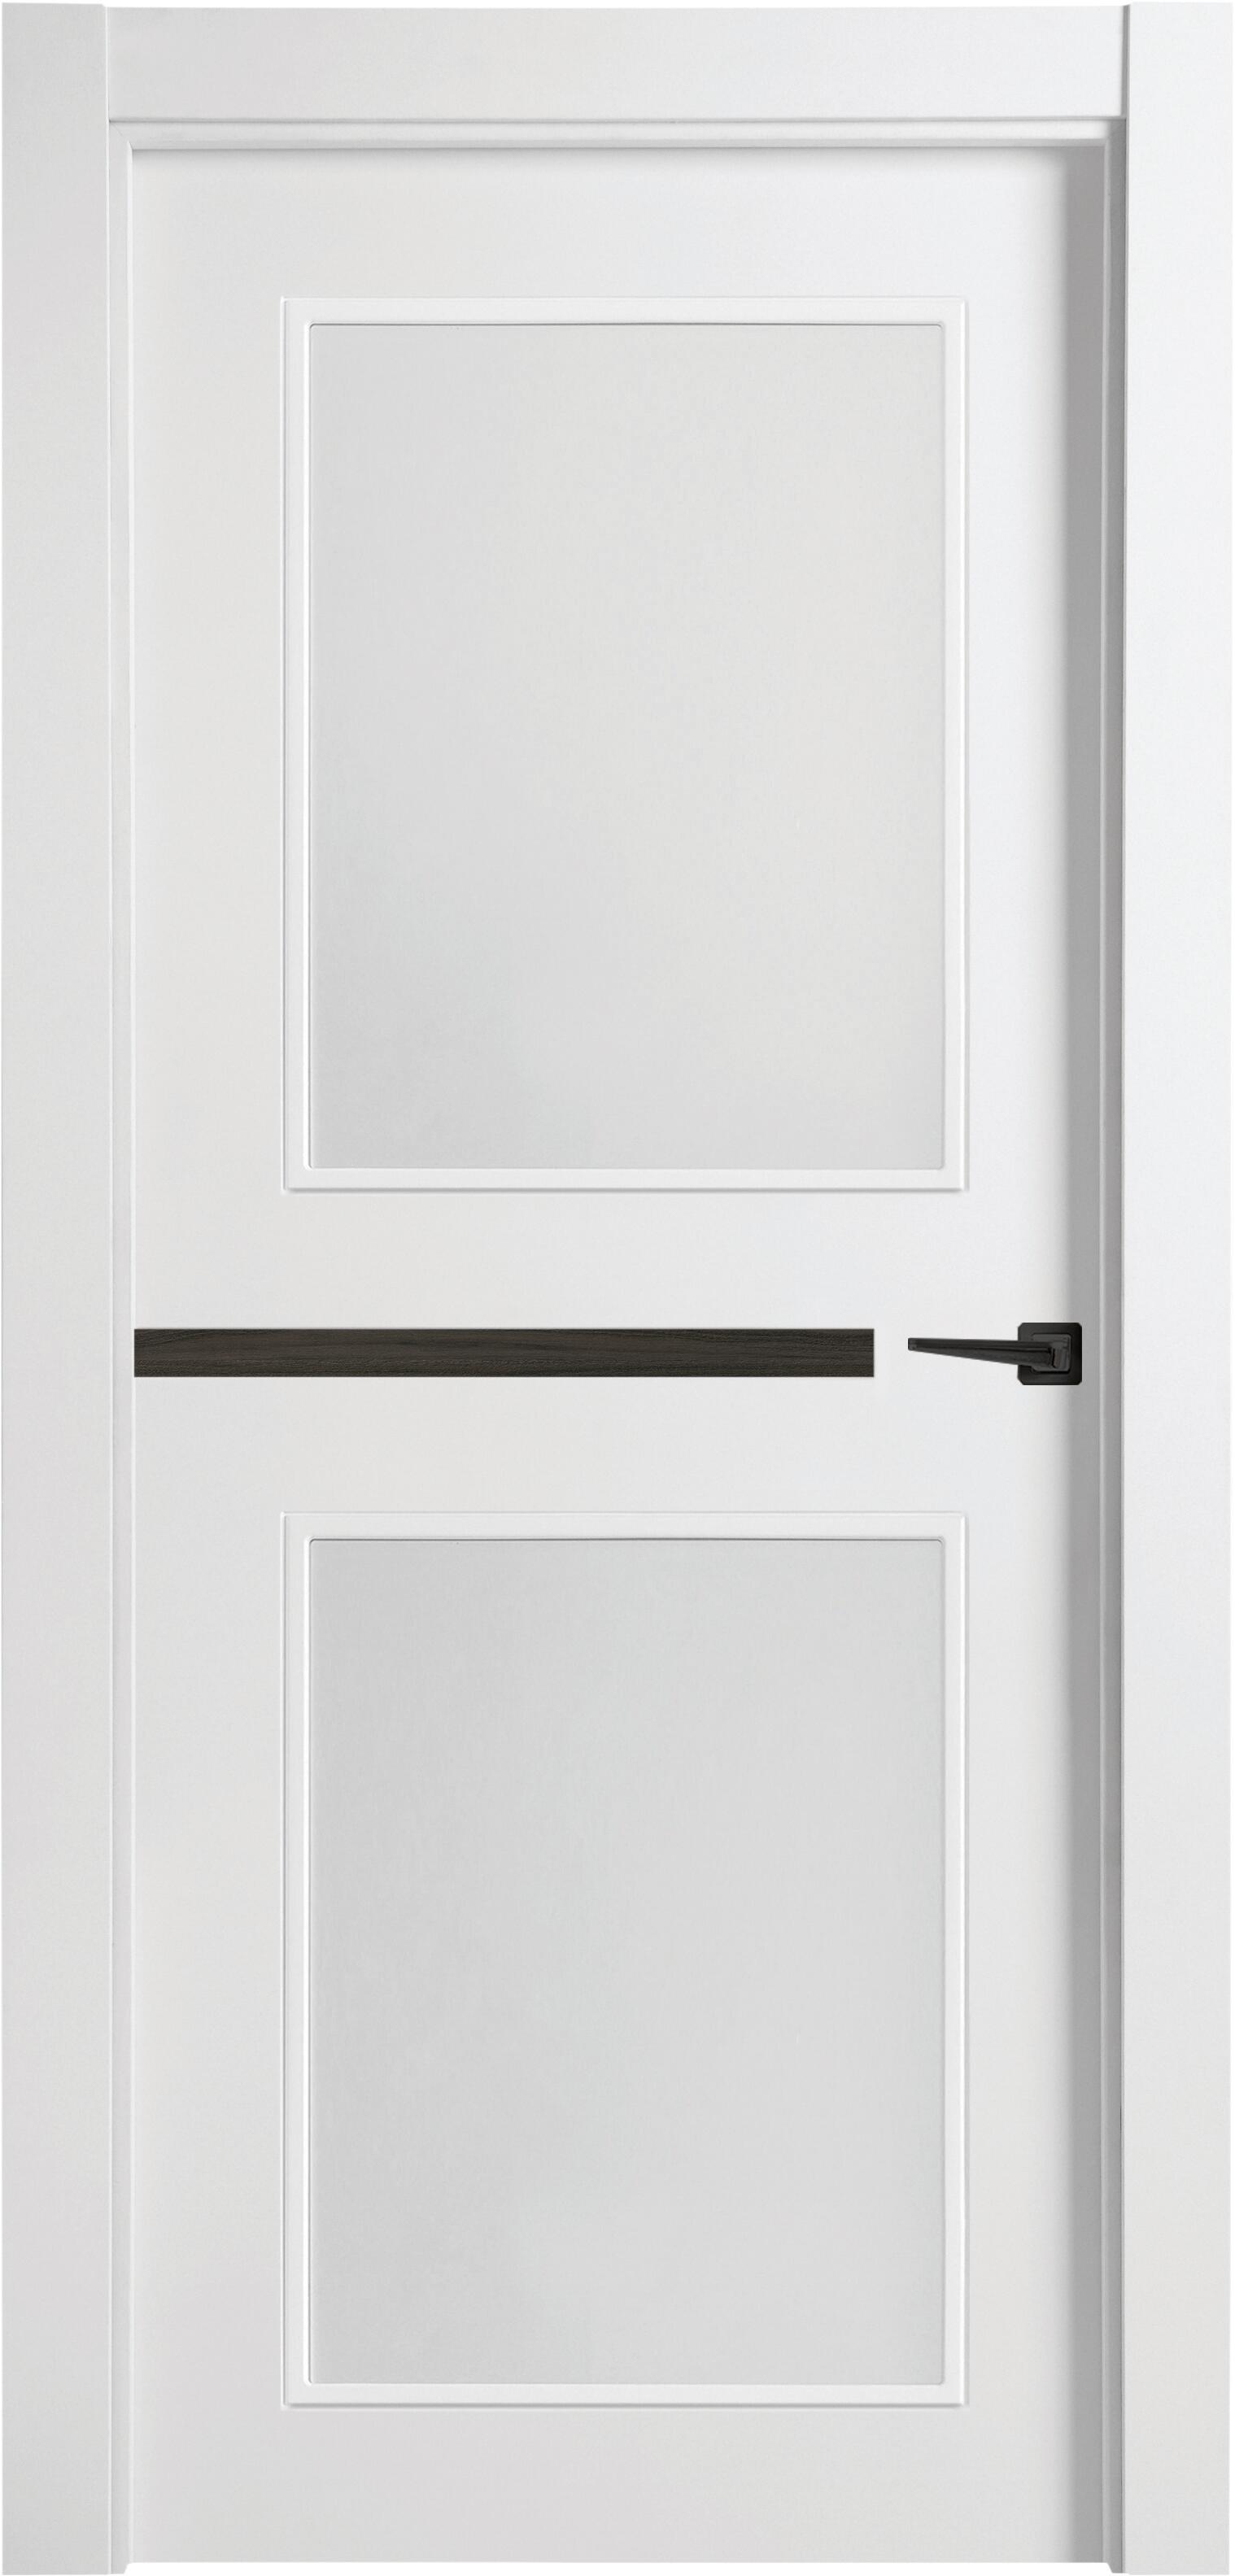 Puerta denver carbón blanco apertura izquierda con cristal de 9x72,5 cm